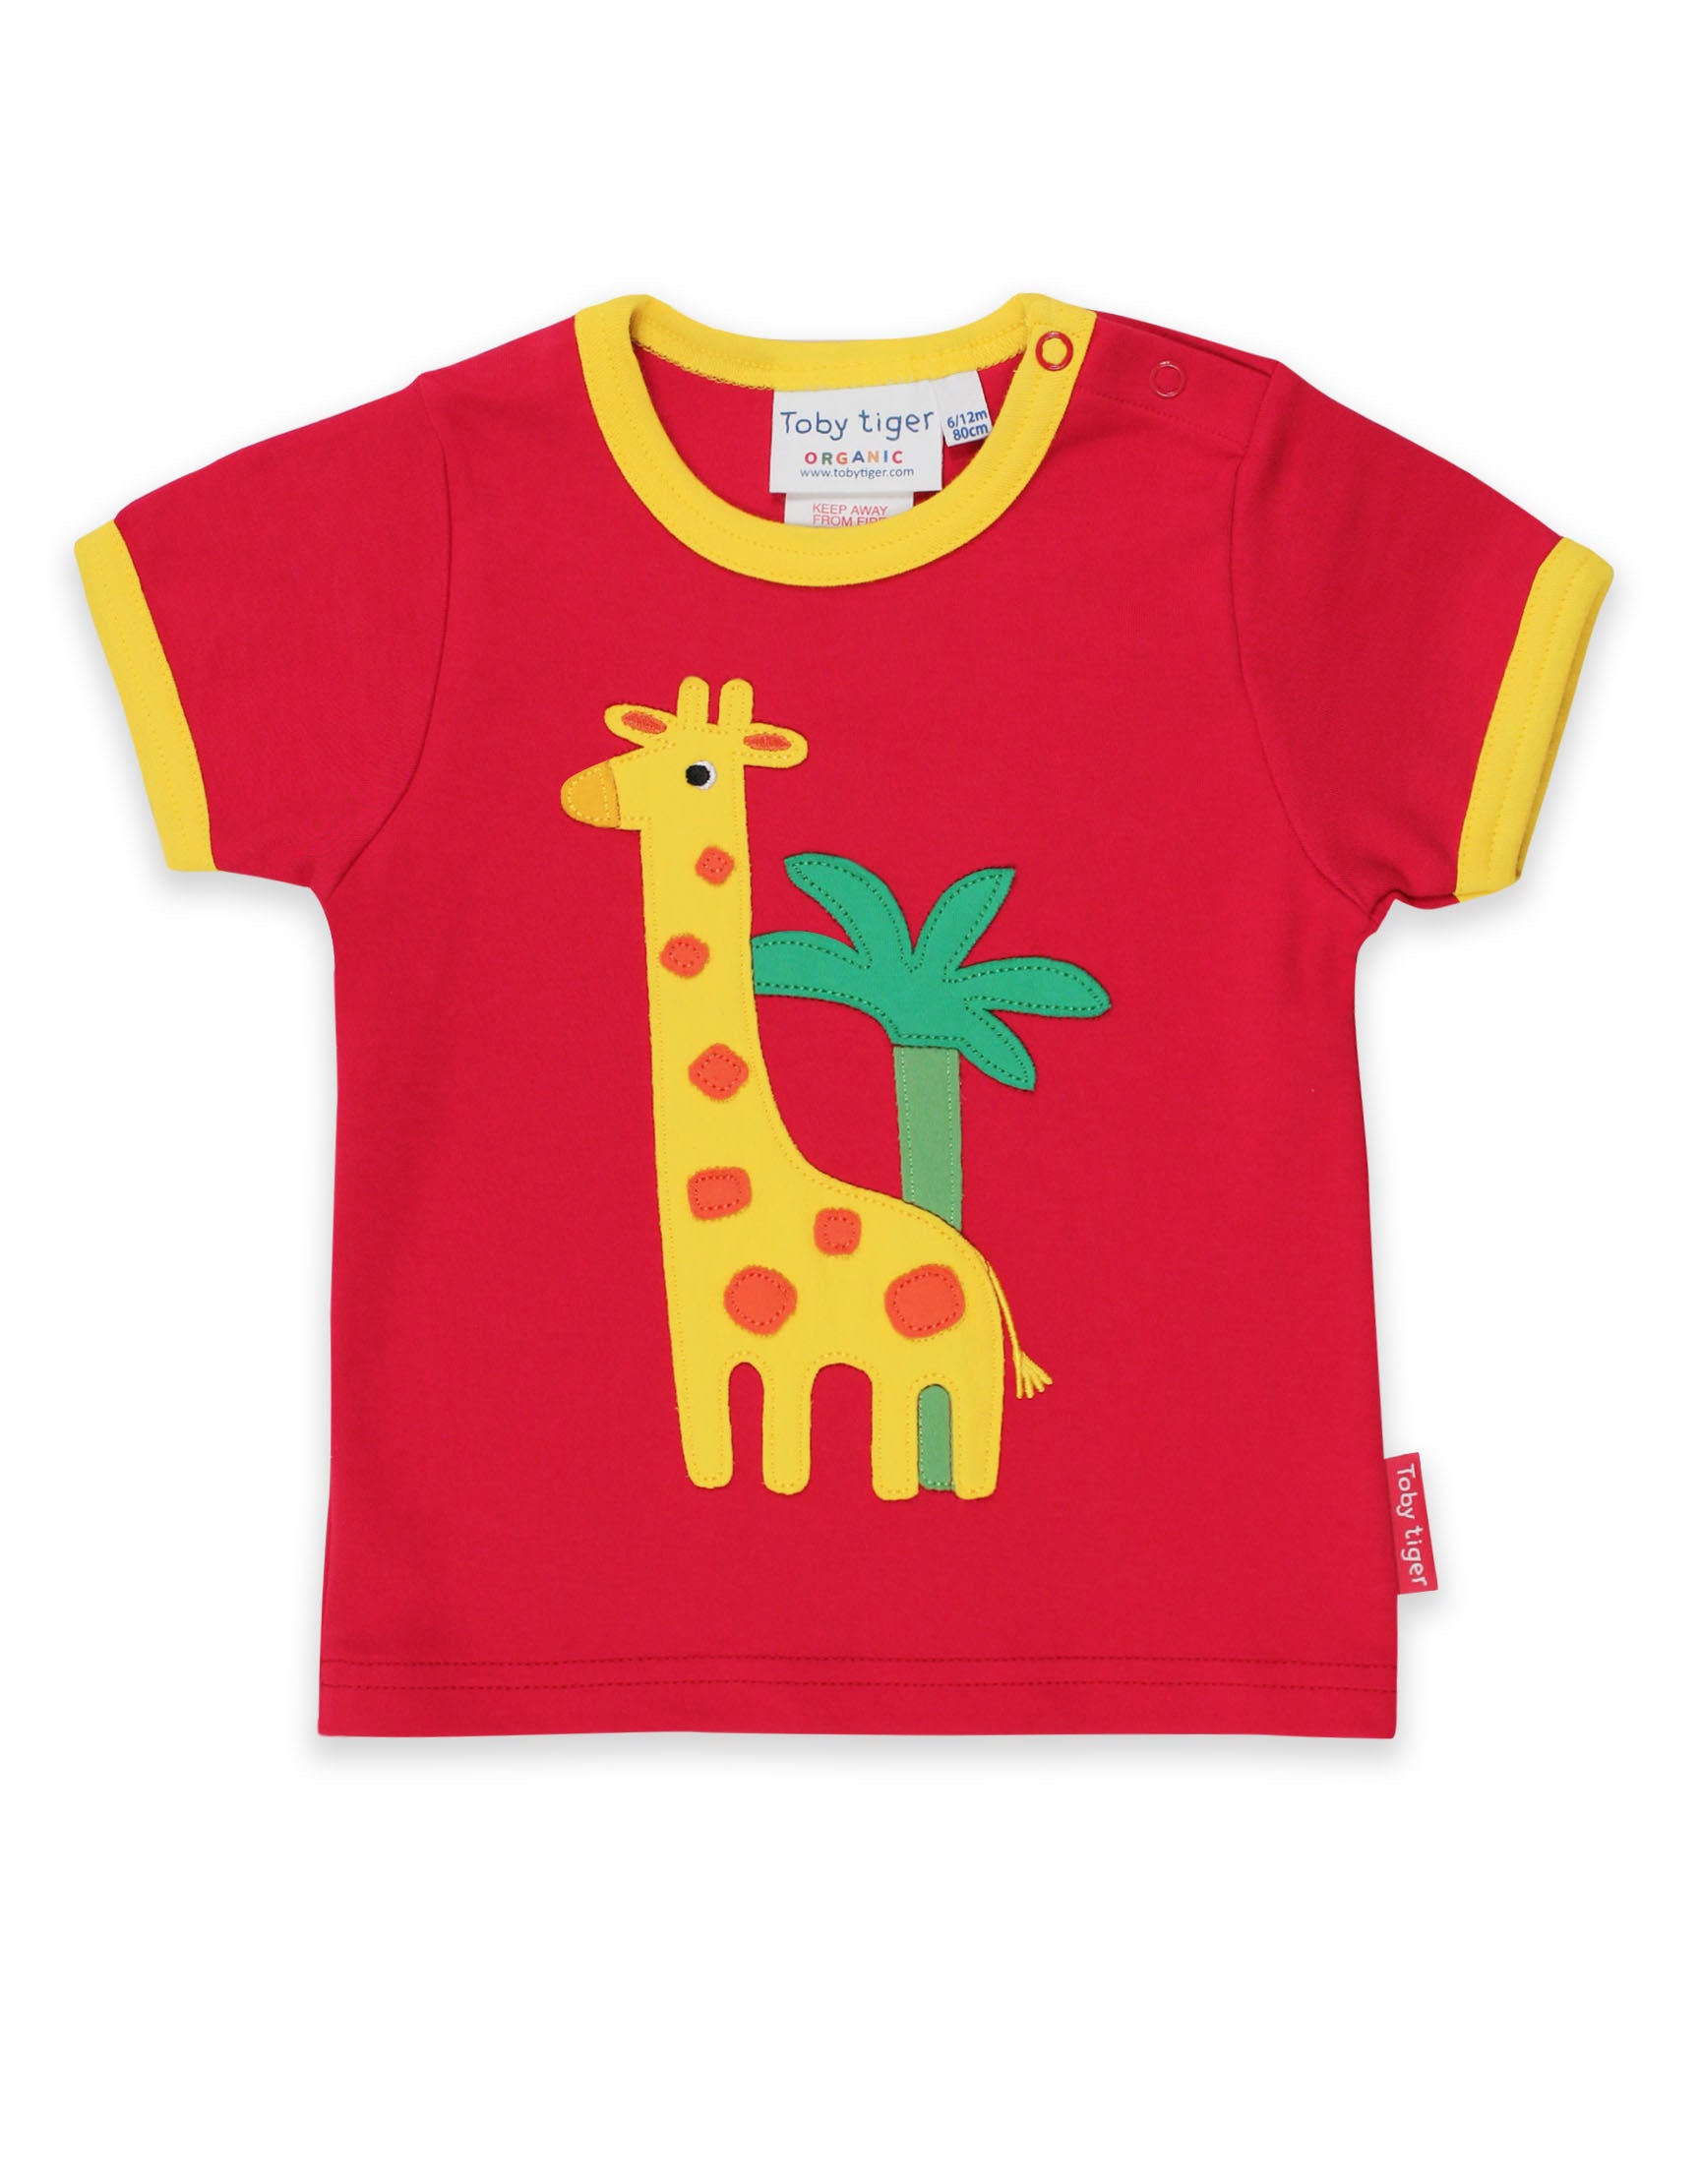 Toby Tiger Organic Short Sleeve T-Shirt - Giraffe Applique